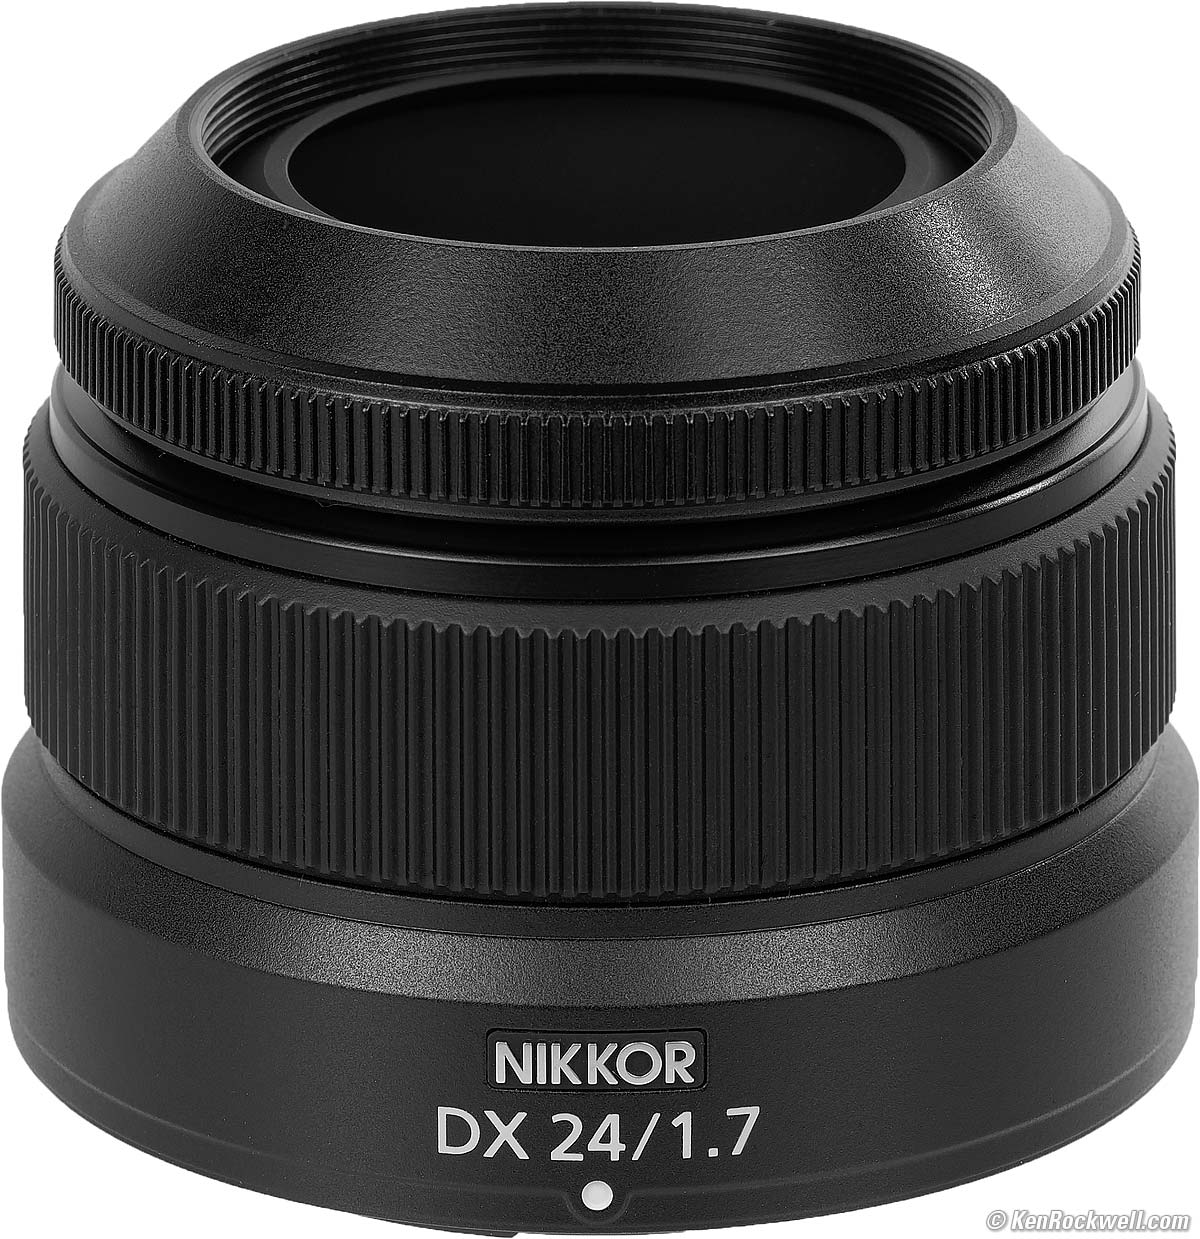 NiKKOR Z DX 24mm f/1.7  Nikon lens for Mirrorless Cameras